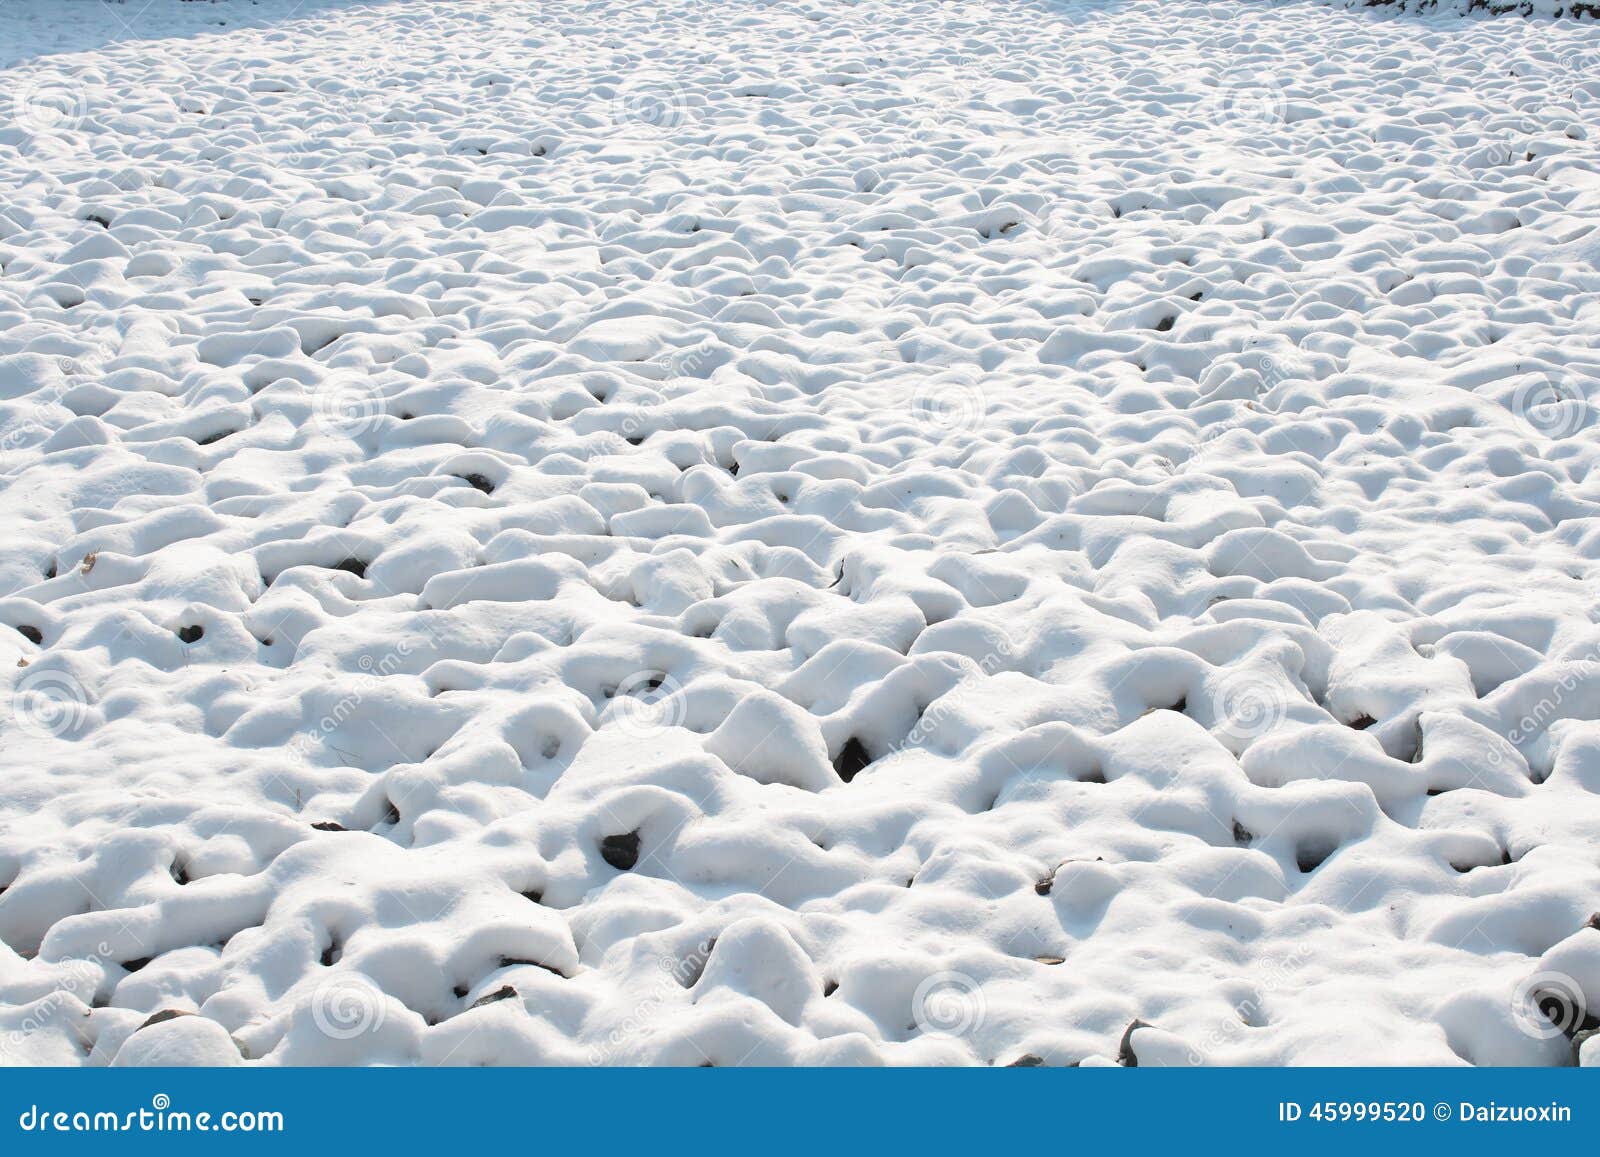 snow mound clipart - photo #32